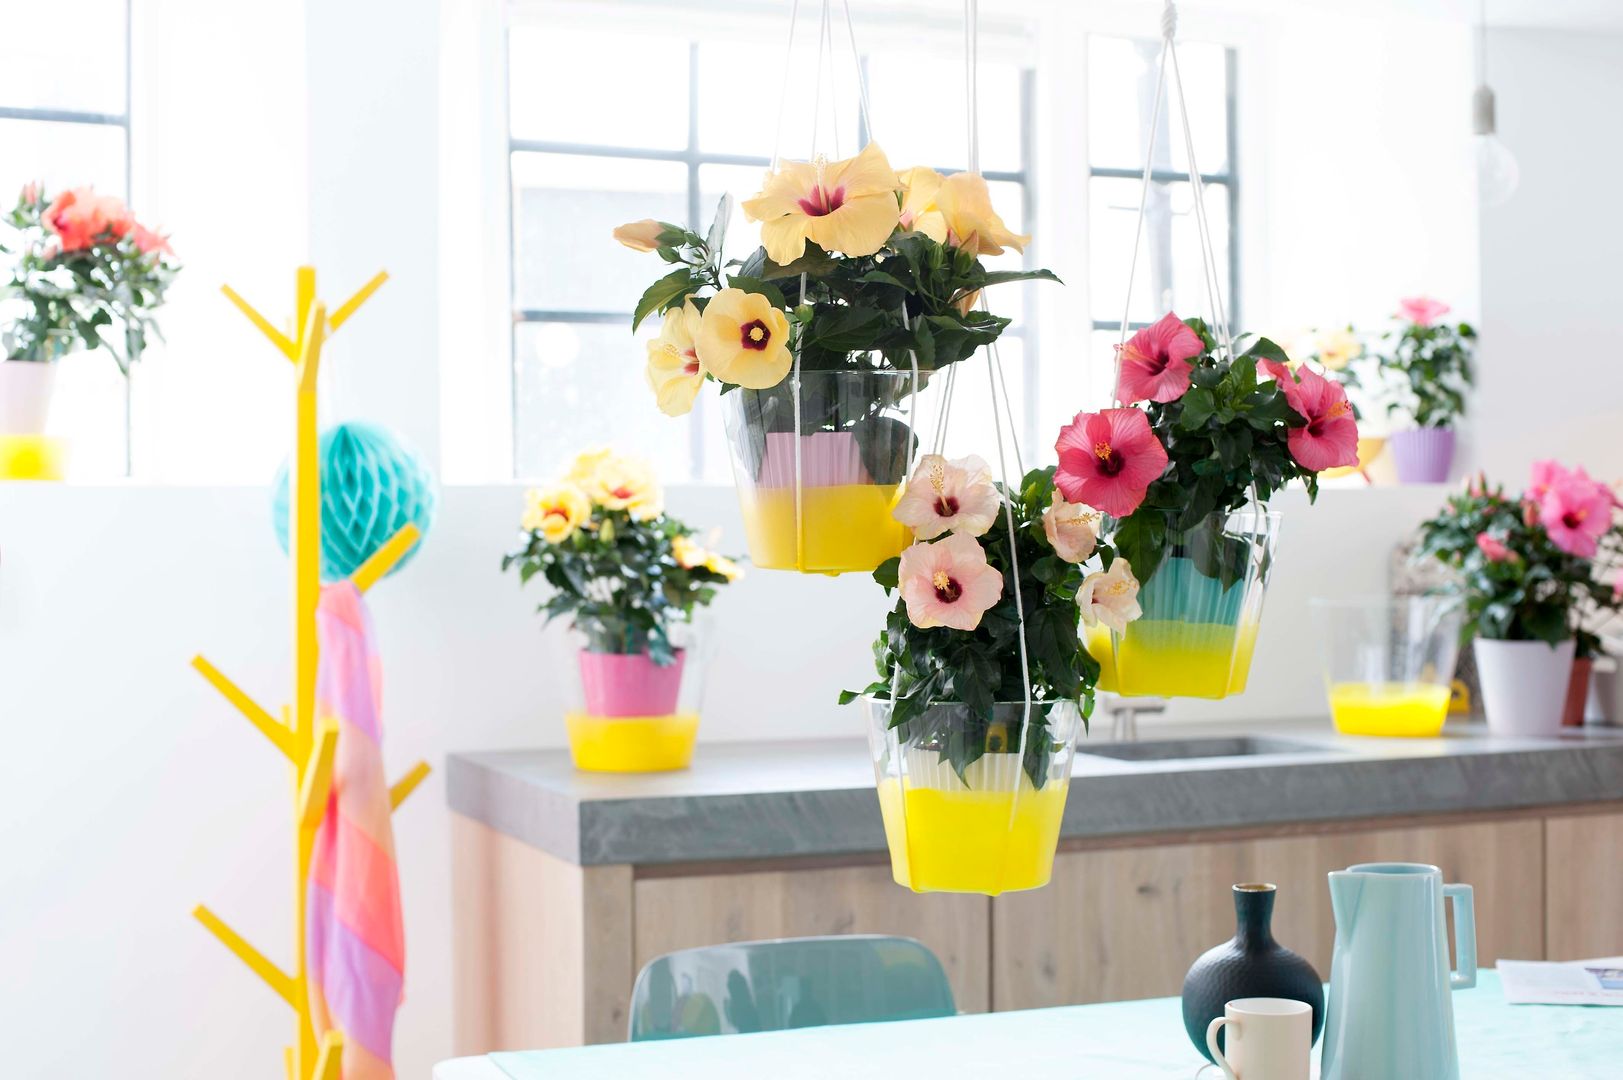 Der Hibiskus – Zimmerpflanze des Monats Mai, Pflanzenfreude.de Pflanzenfreude.de Dining room Accessories & decoration